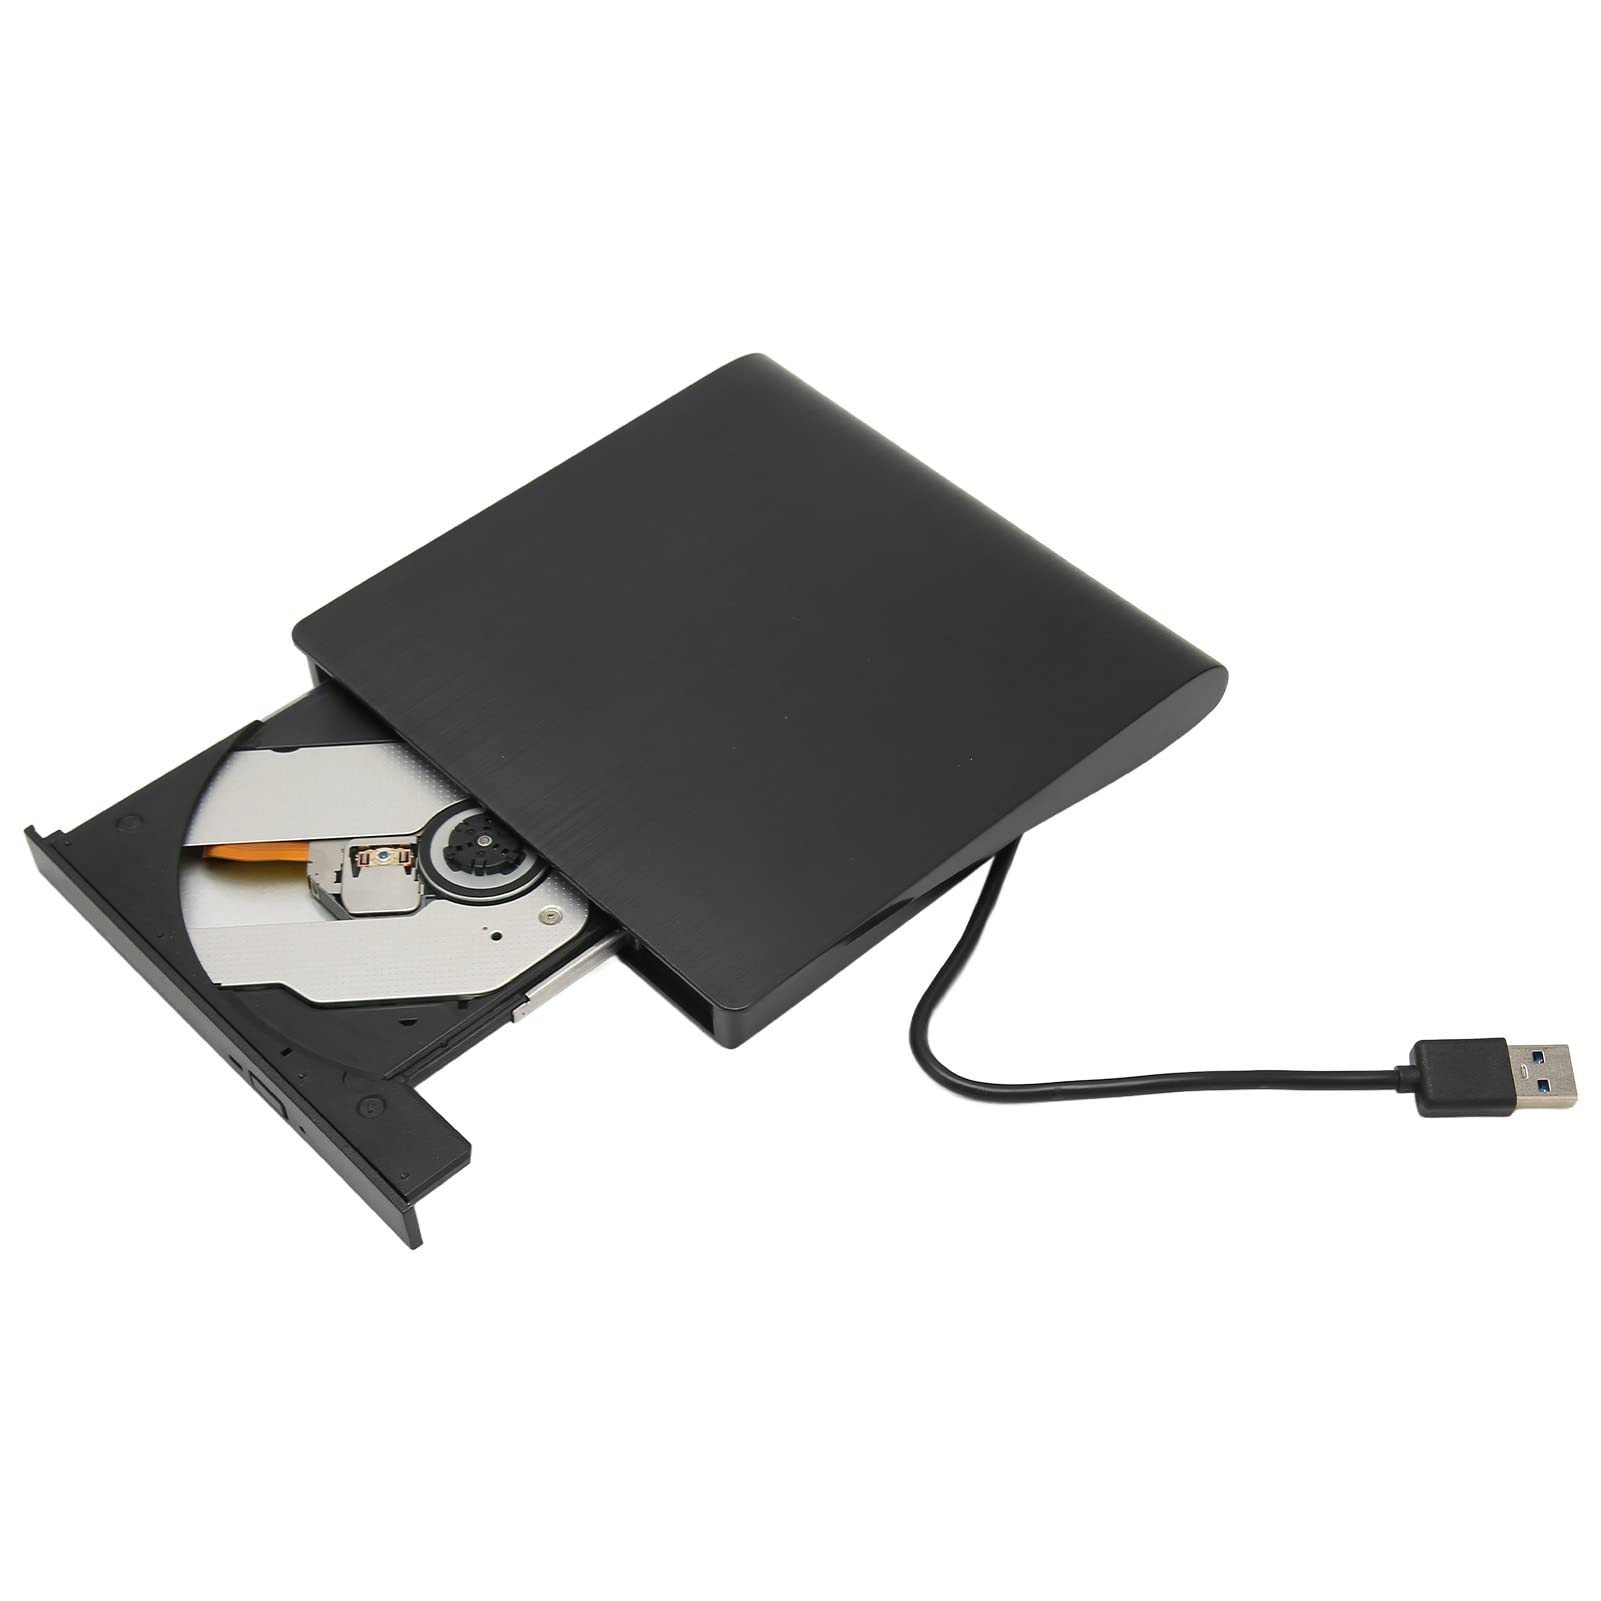 Zunate Externes DVD-Laufwerk, USB 3.0 Ultradünnes Externes DVD-Laufwerk mit USB-C-Adapter, Kompatibel mit Laptop, Desktop, All-in-One, Notebook, für Windows, Vista, OS X